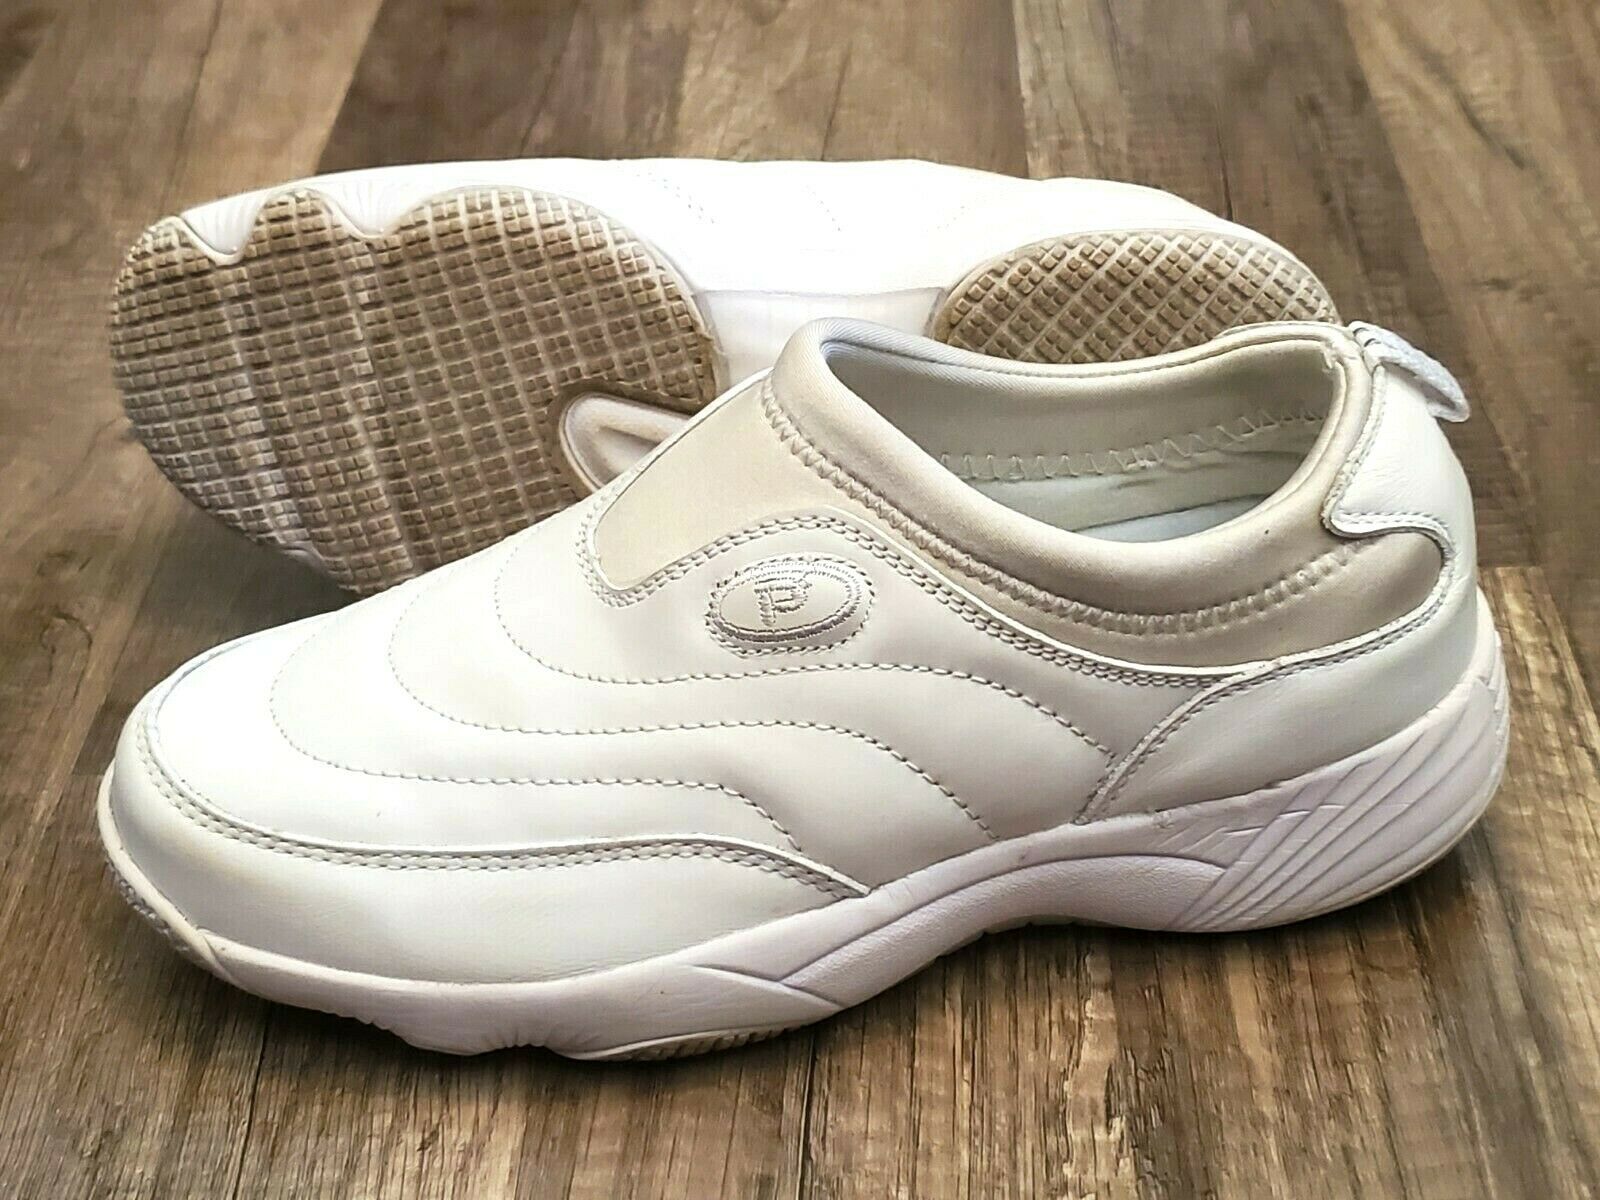 Propet Wash N Wear Slip On II W3851 Walking Shoes women 6 X(2E white EXTRA WIDE